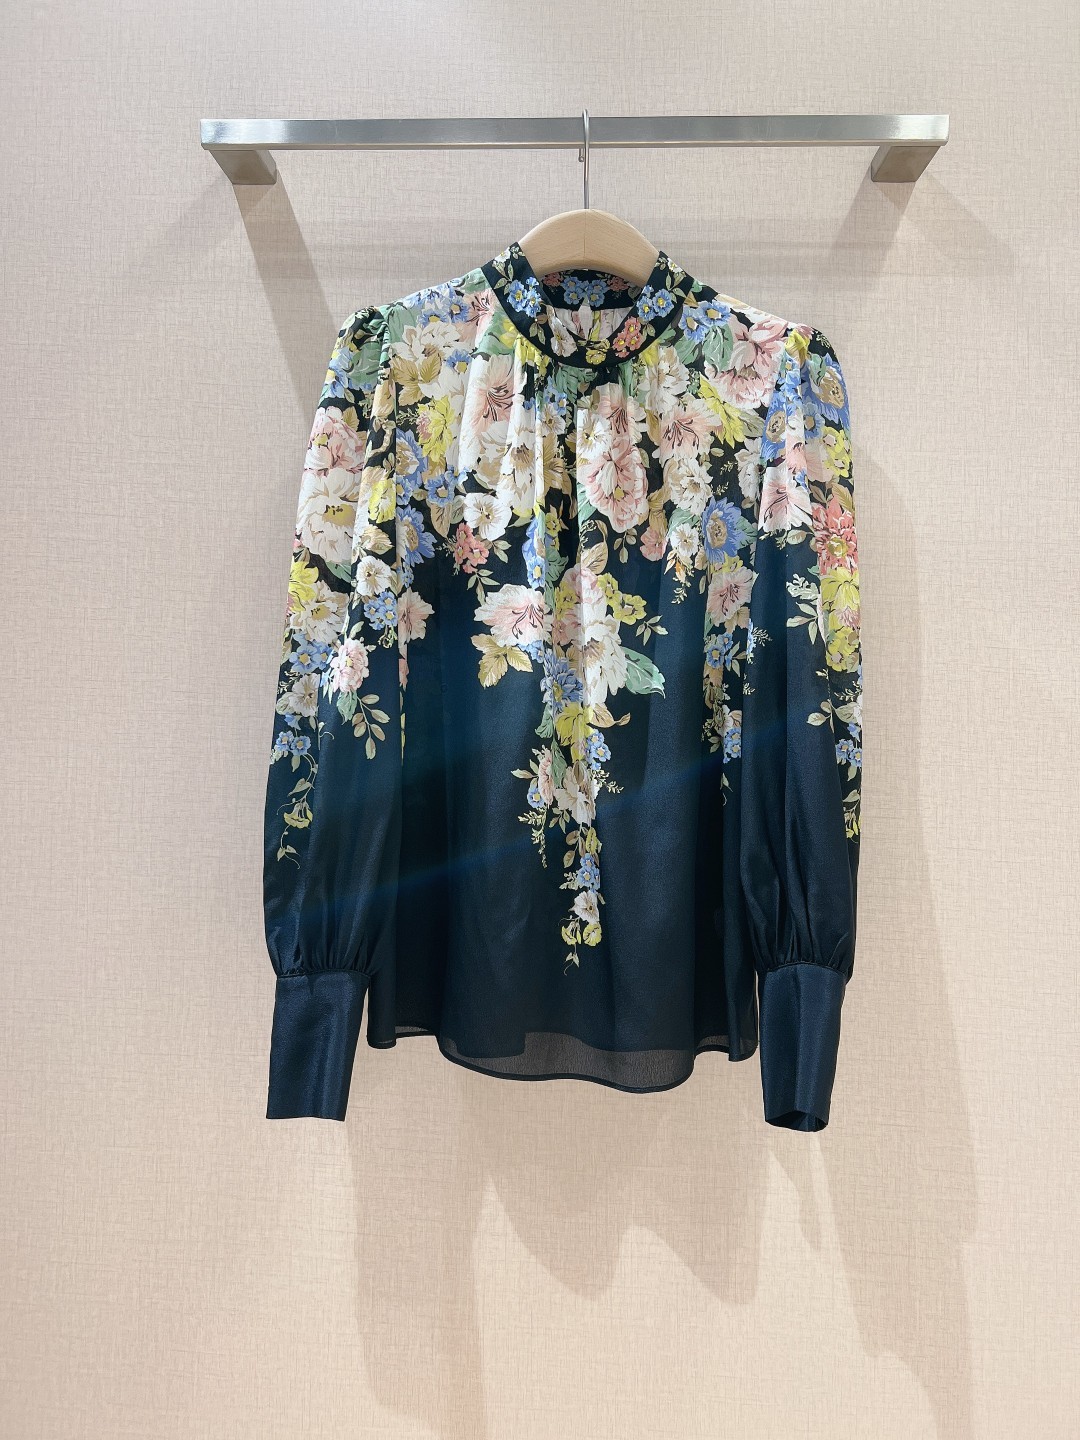 小众立领长袖新款衬衫珊瑚色花卉图案的立领长袖衬衫选用silk100%面料制成经典的衬衫廓形剪裁直袖设计+